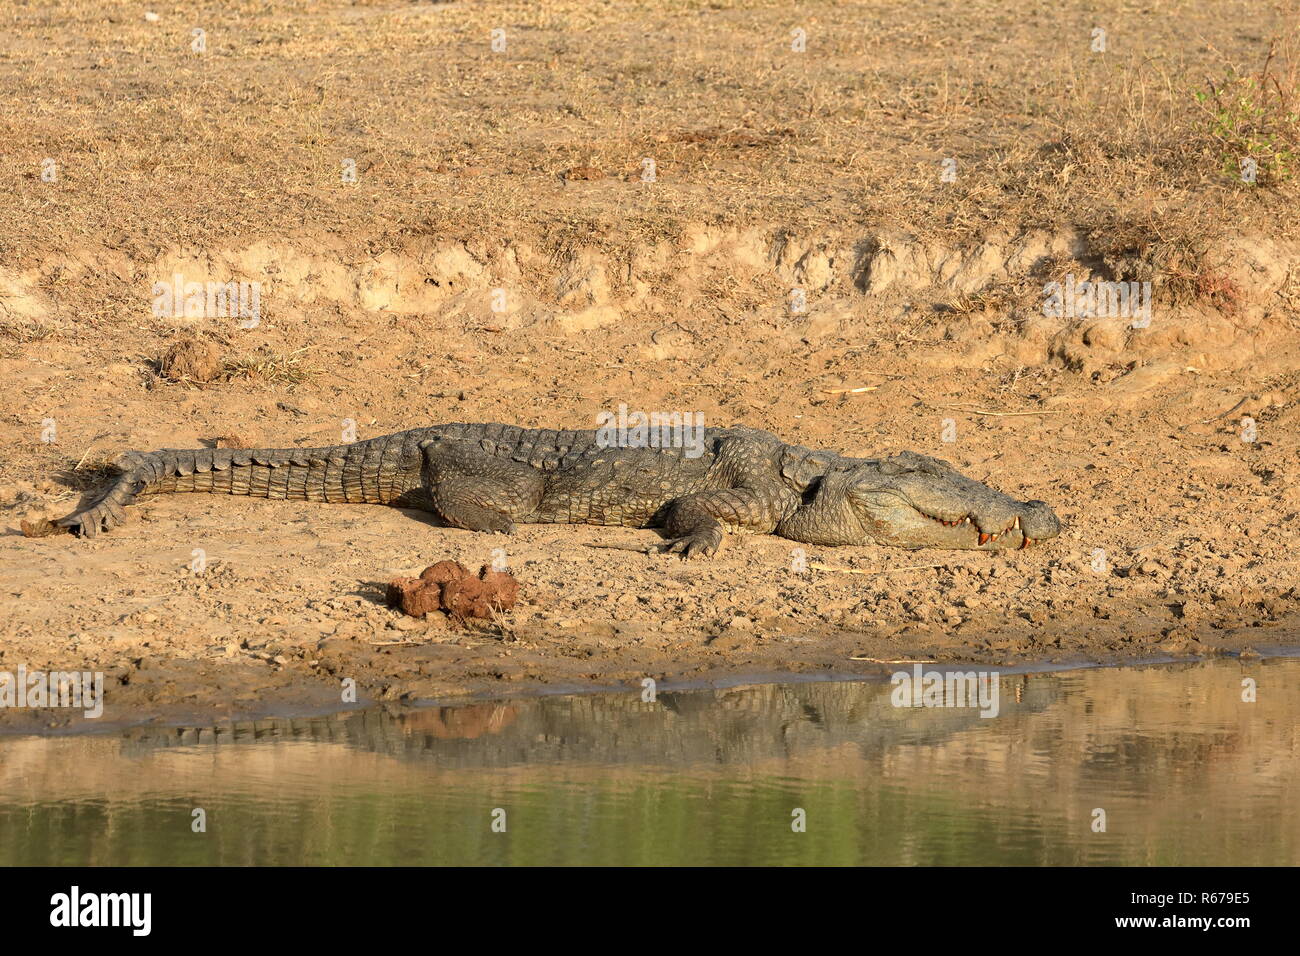 crocodiles in yala national park in sri lanka Stock Photo